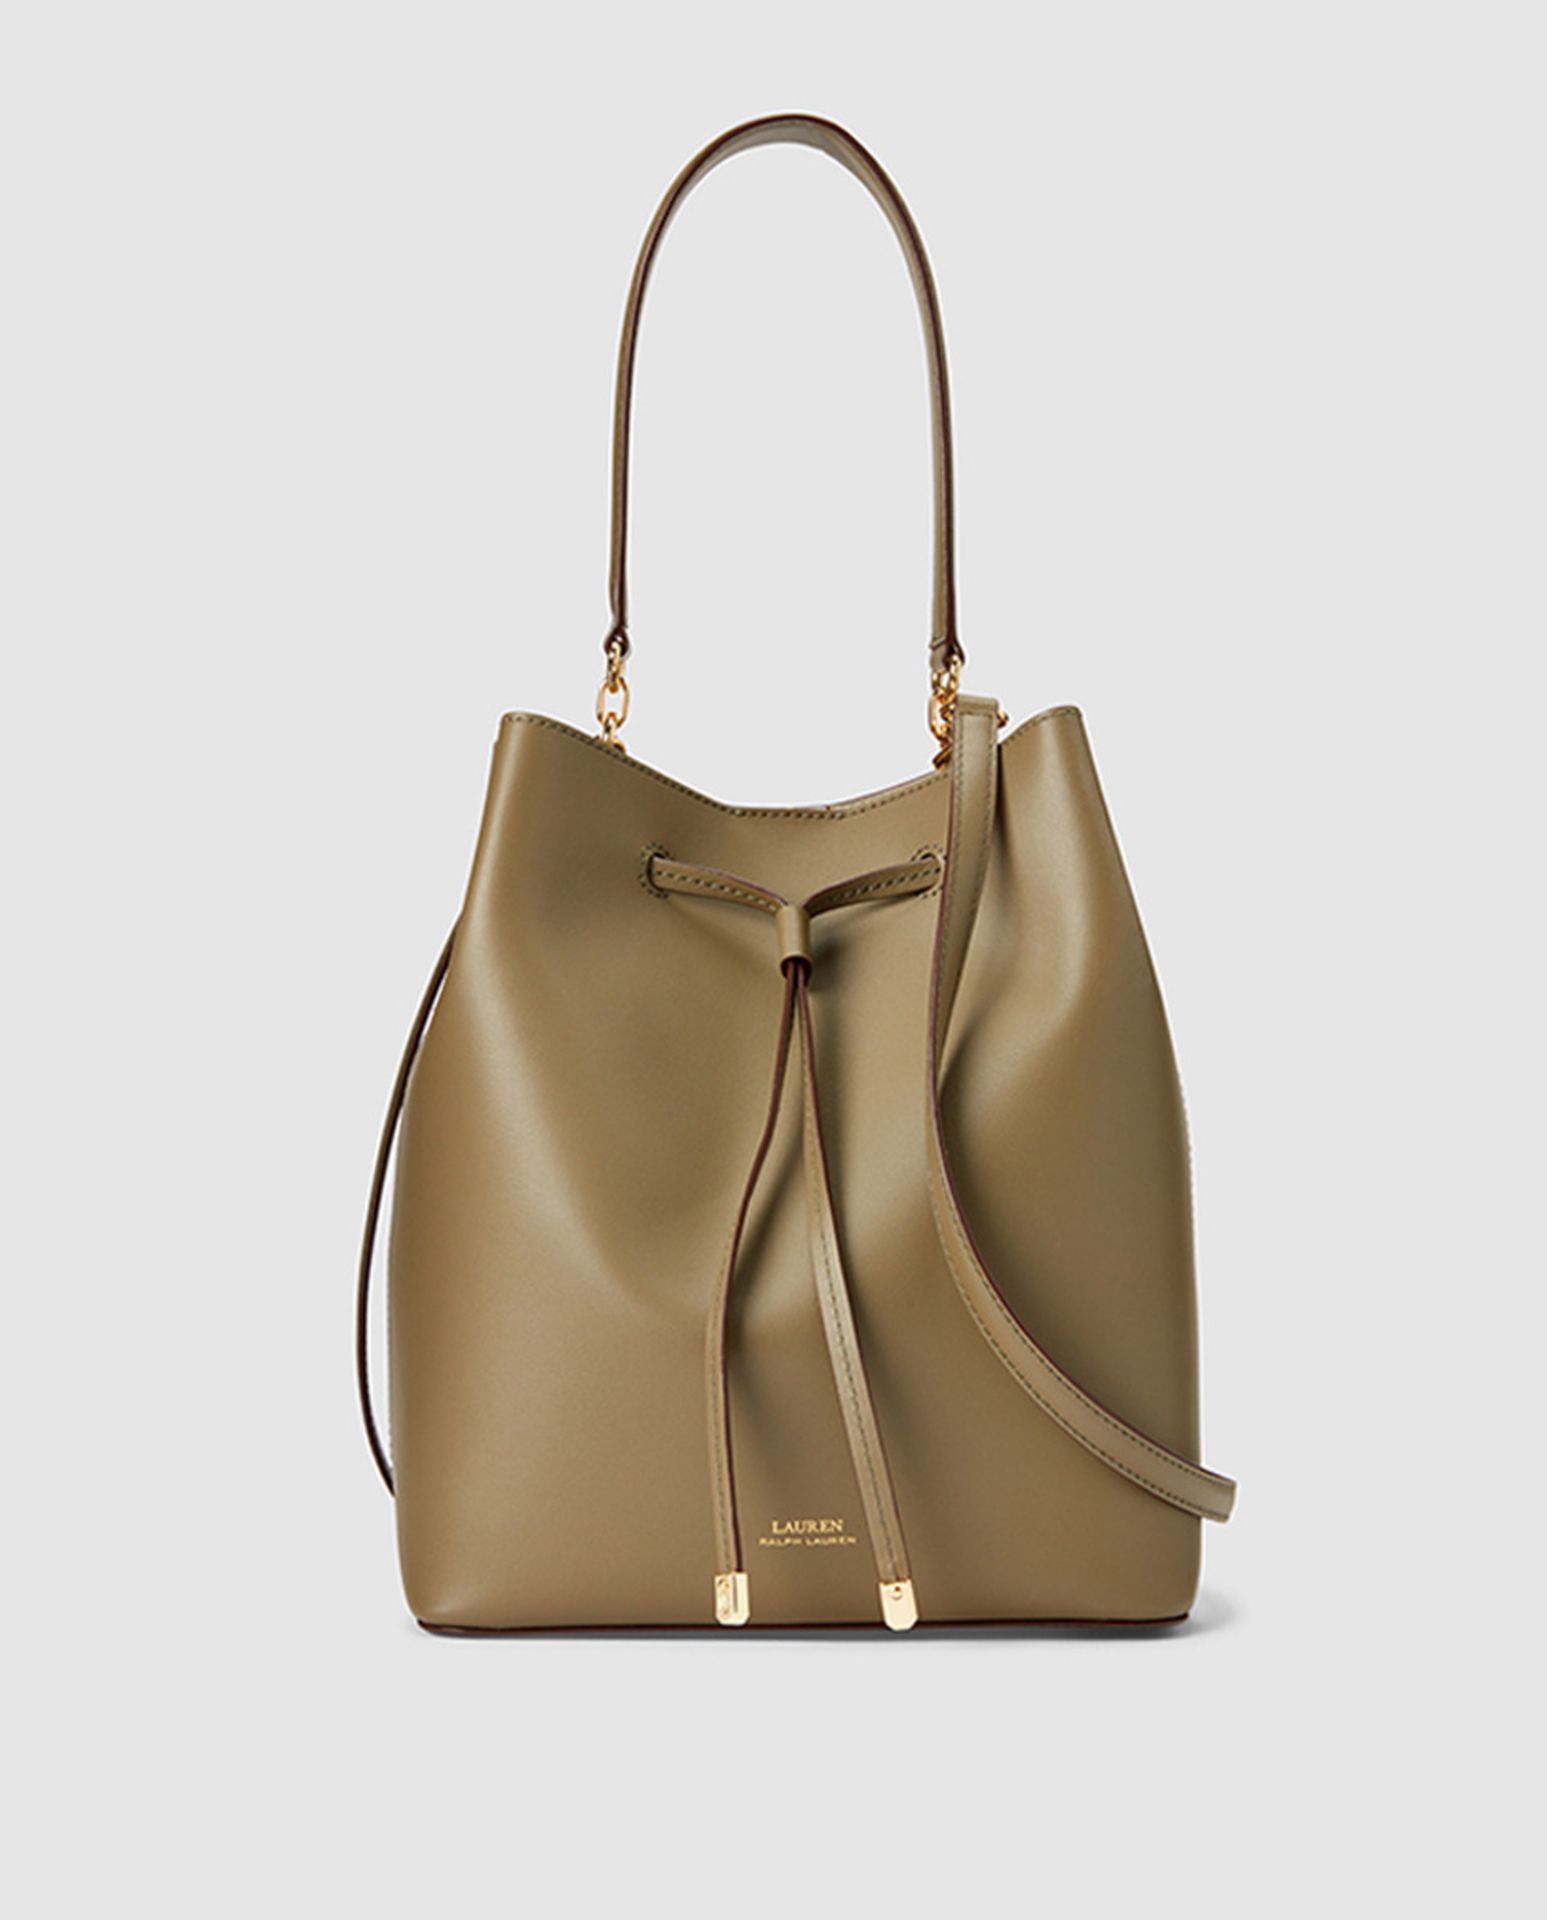 V Brand New Ladies Leather Ralph Lauren Bucket Bag With Magnet (ISP £249 Ralph Lauren)